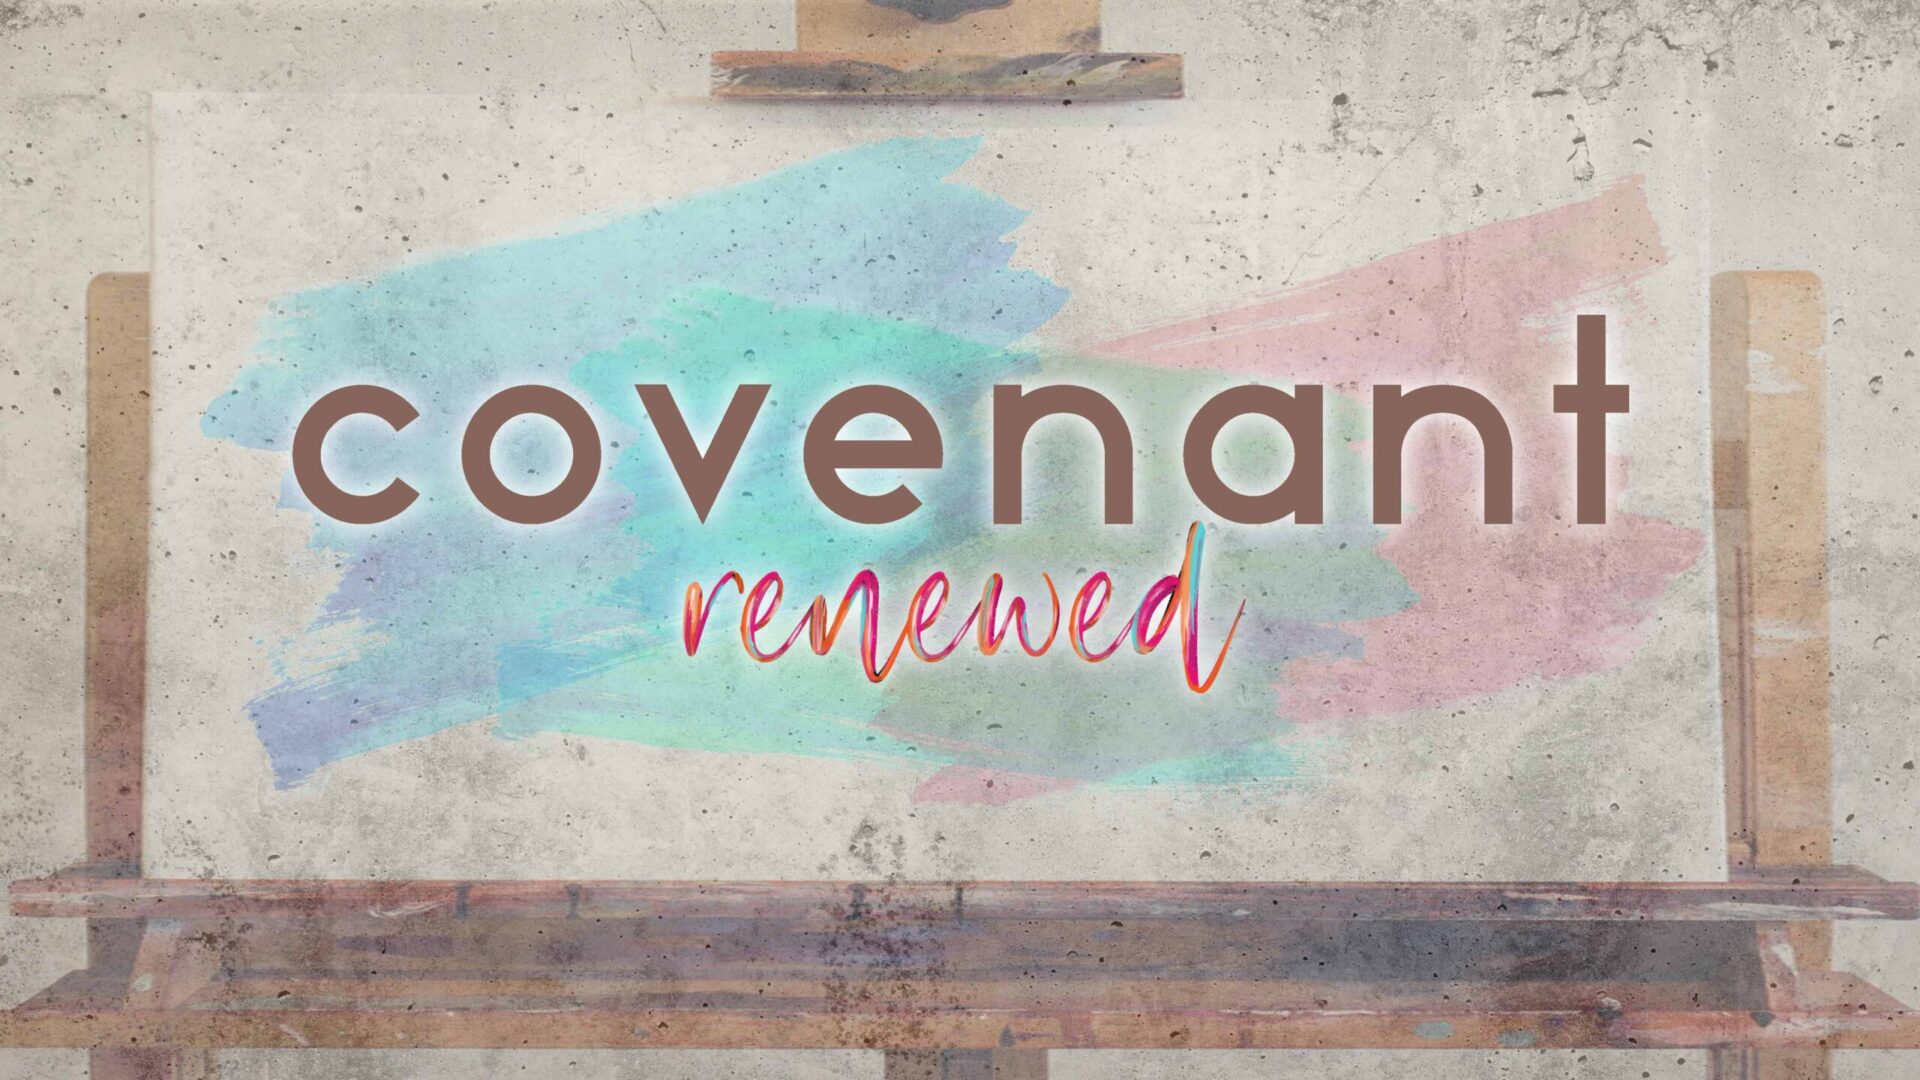 Covenant Renewal